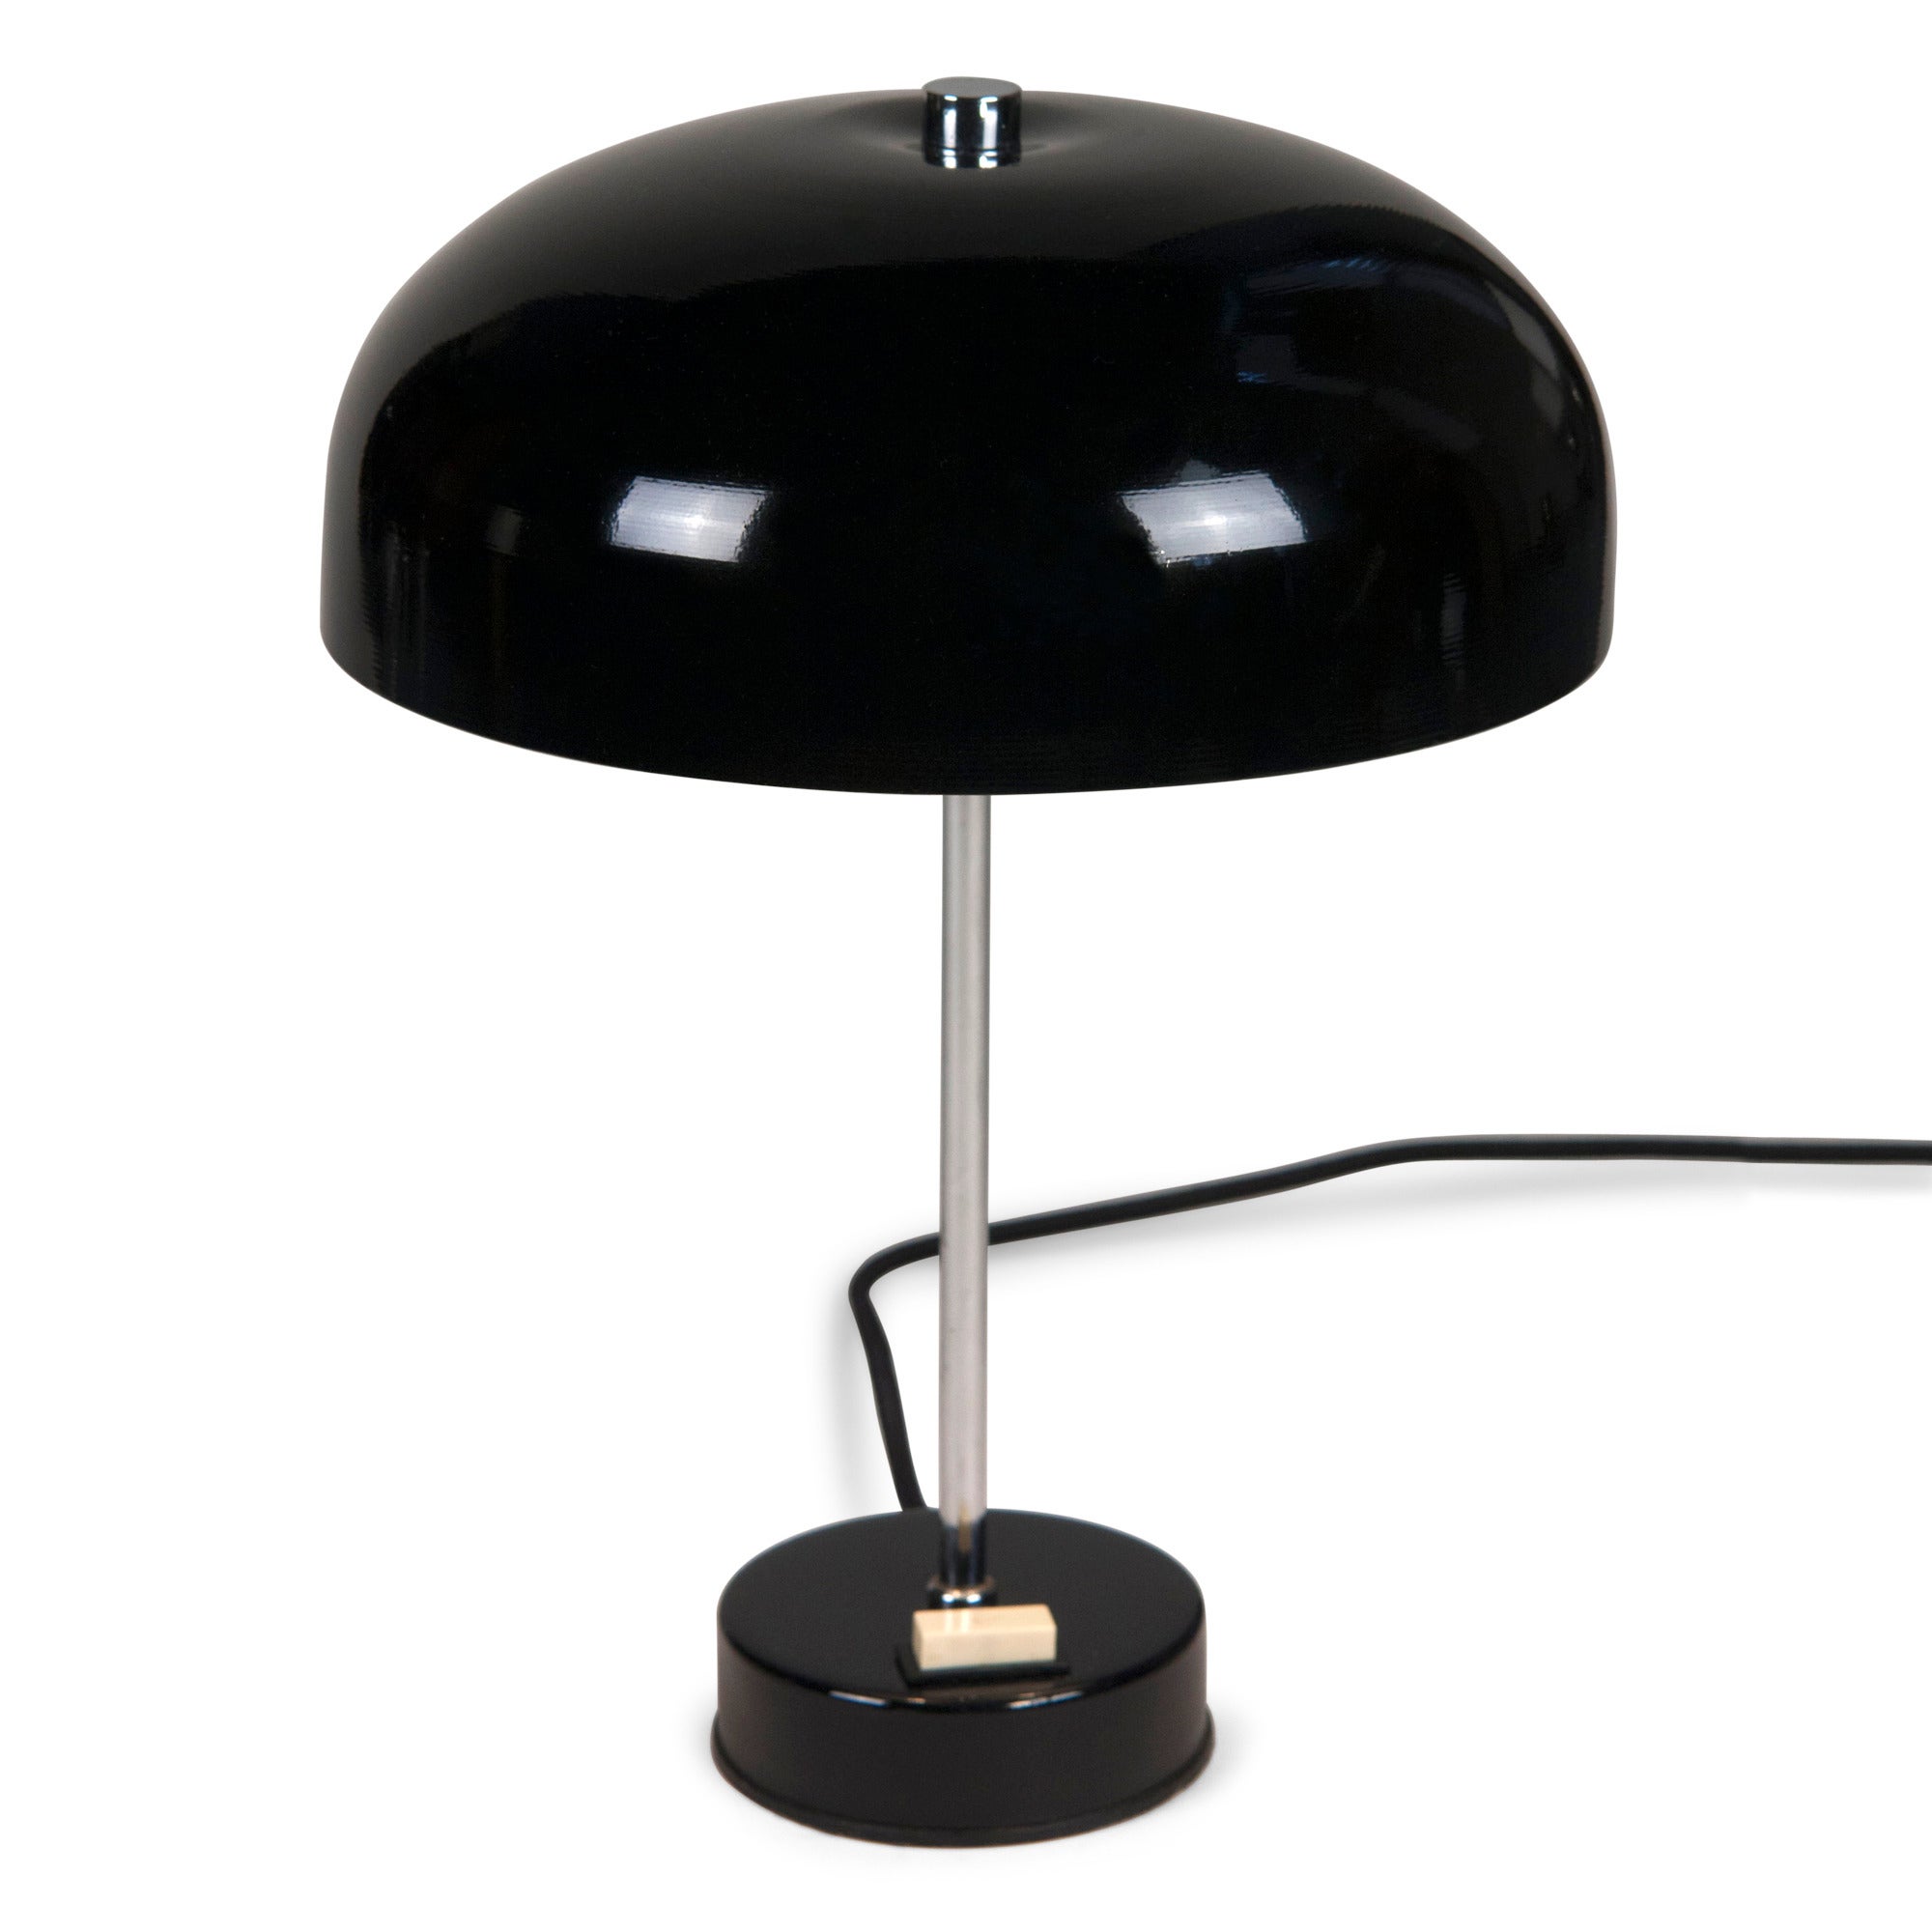 Black Dome Desk Lamp